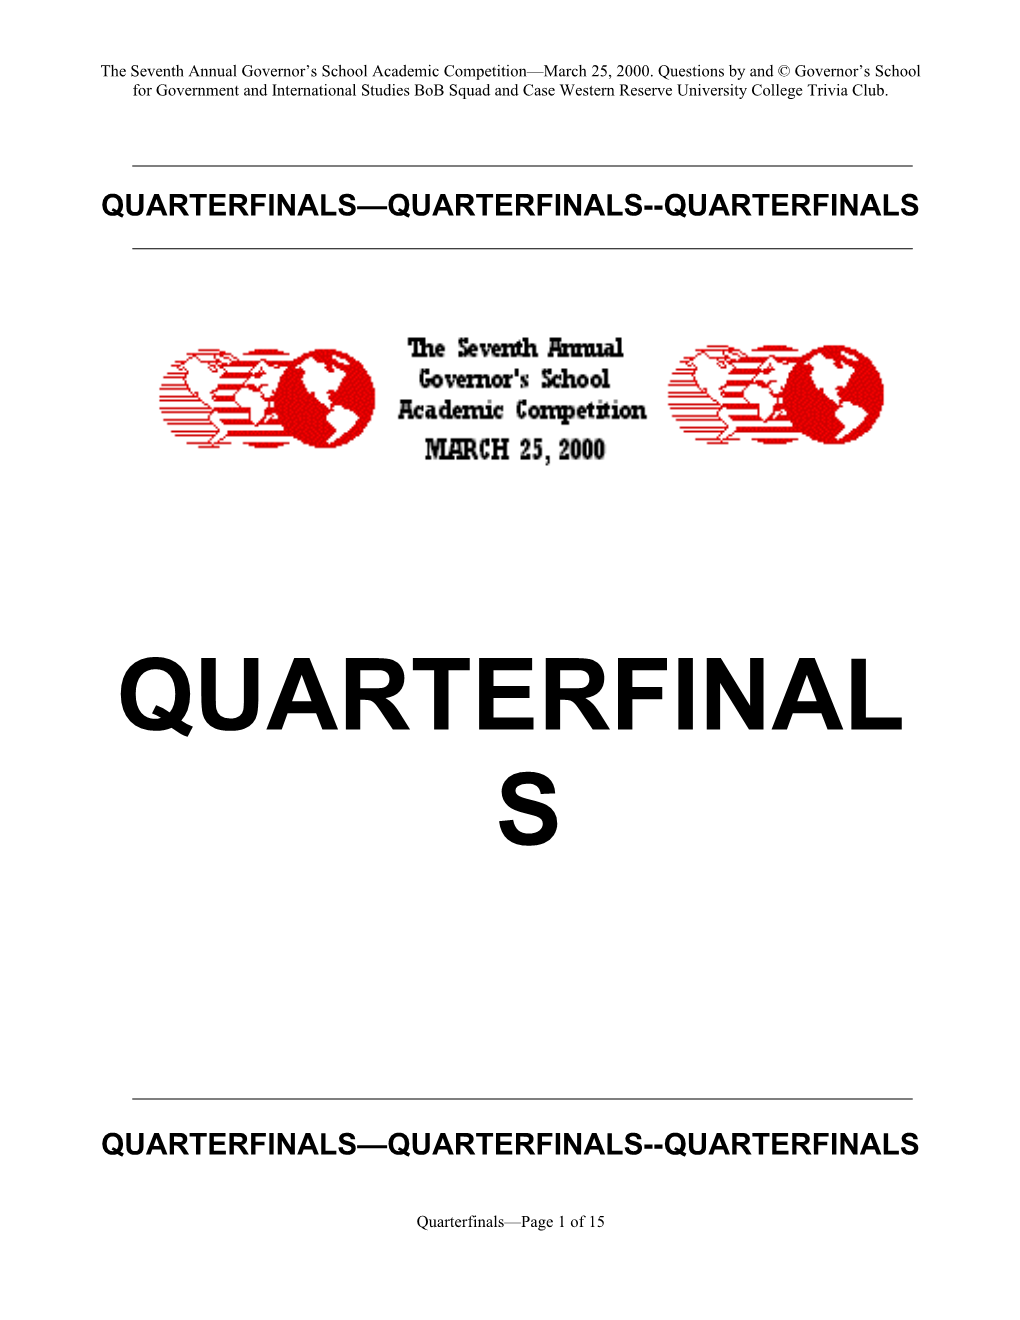 Quarterfinals Quarterfinals Quarterfinals